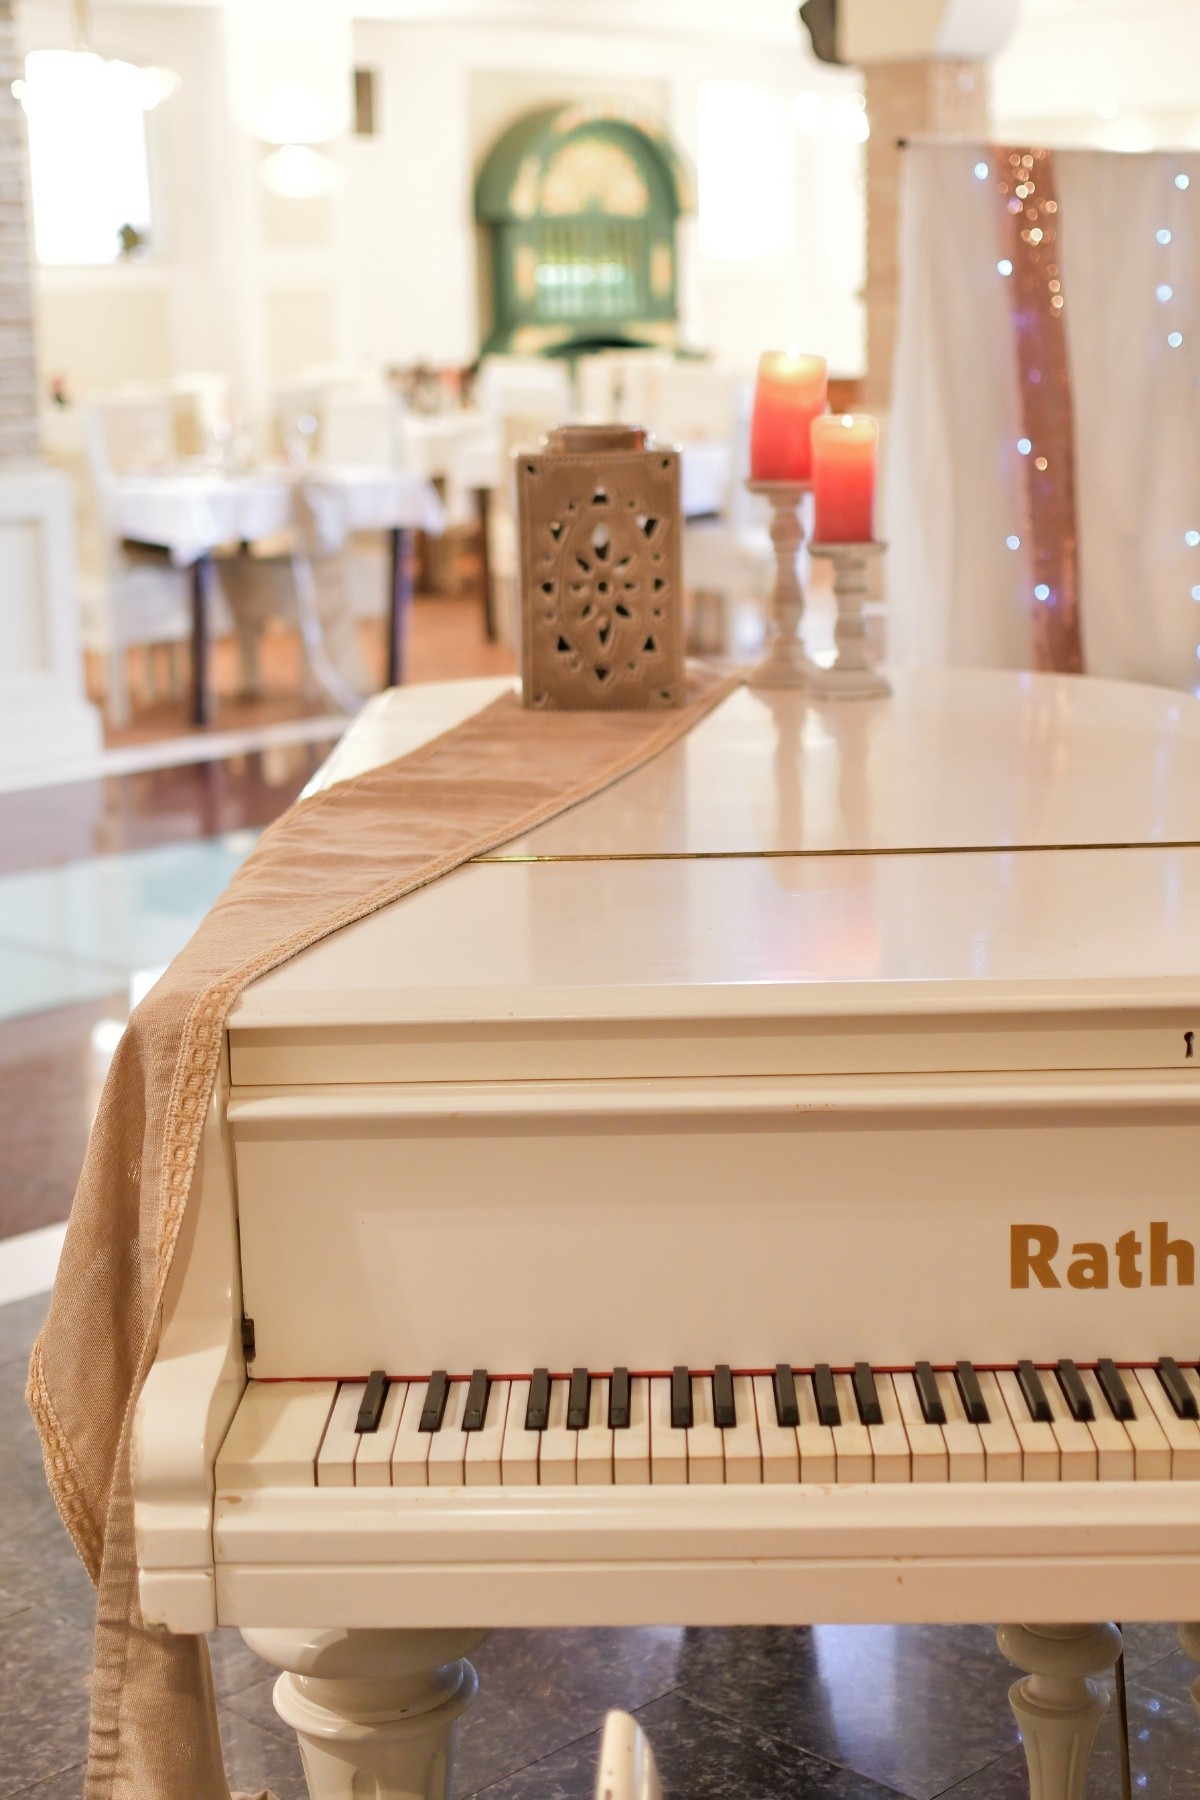 Δύο υπέροχα κλασικά πιάνα που διακοσμούν τον χώρο του restaurant! So elegant!